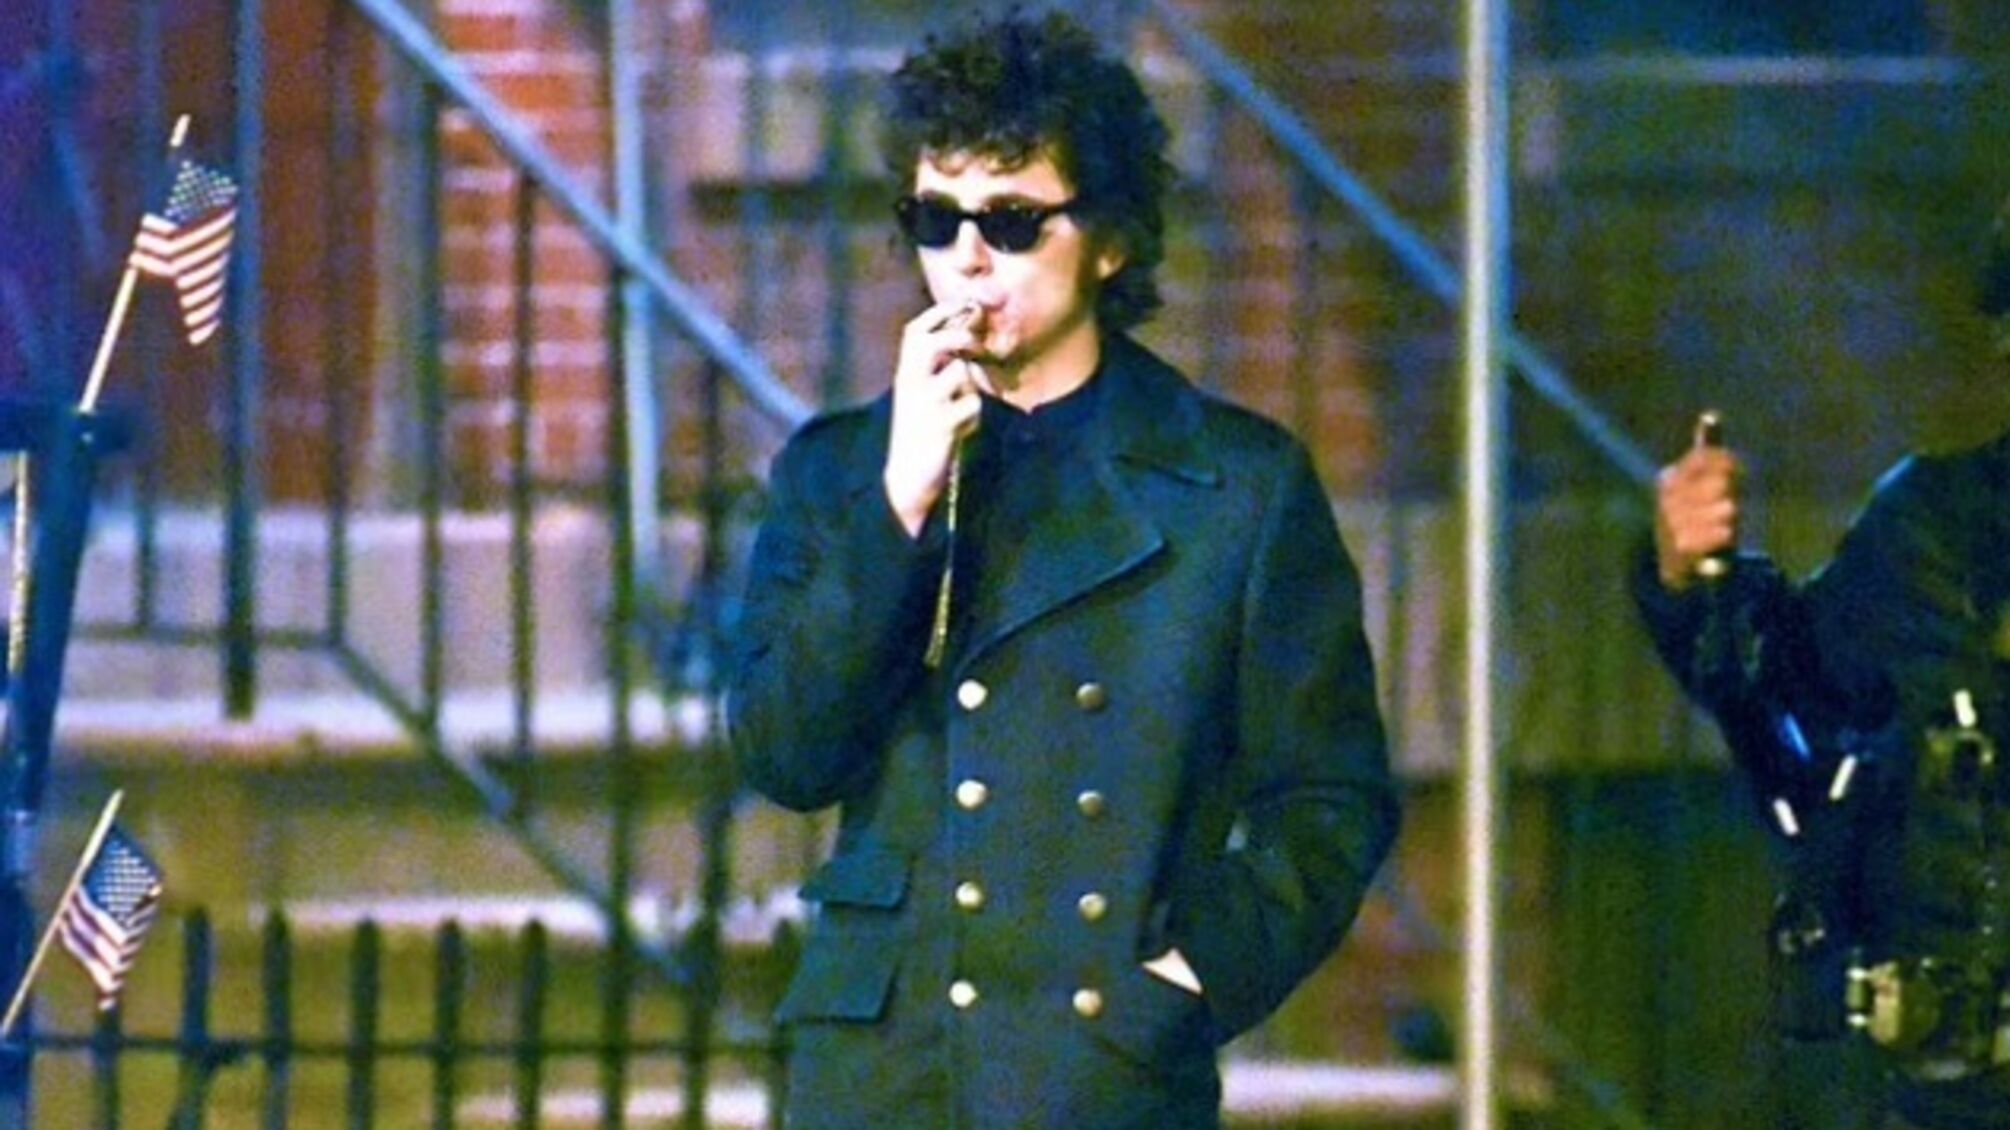 Тімоті Шаламе знявся в ролі Боба Ділана під час зйомок біографічного фільму про музиканта